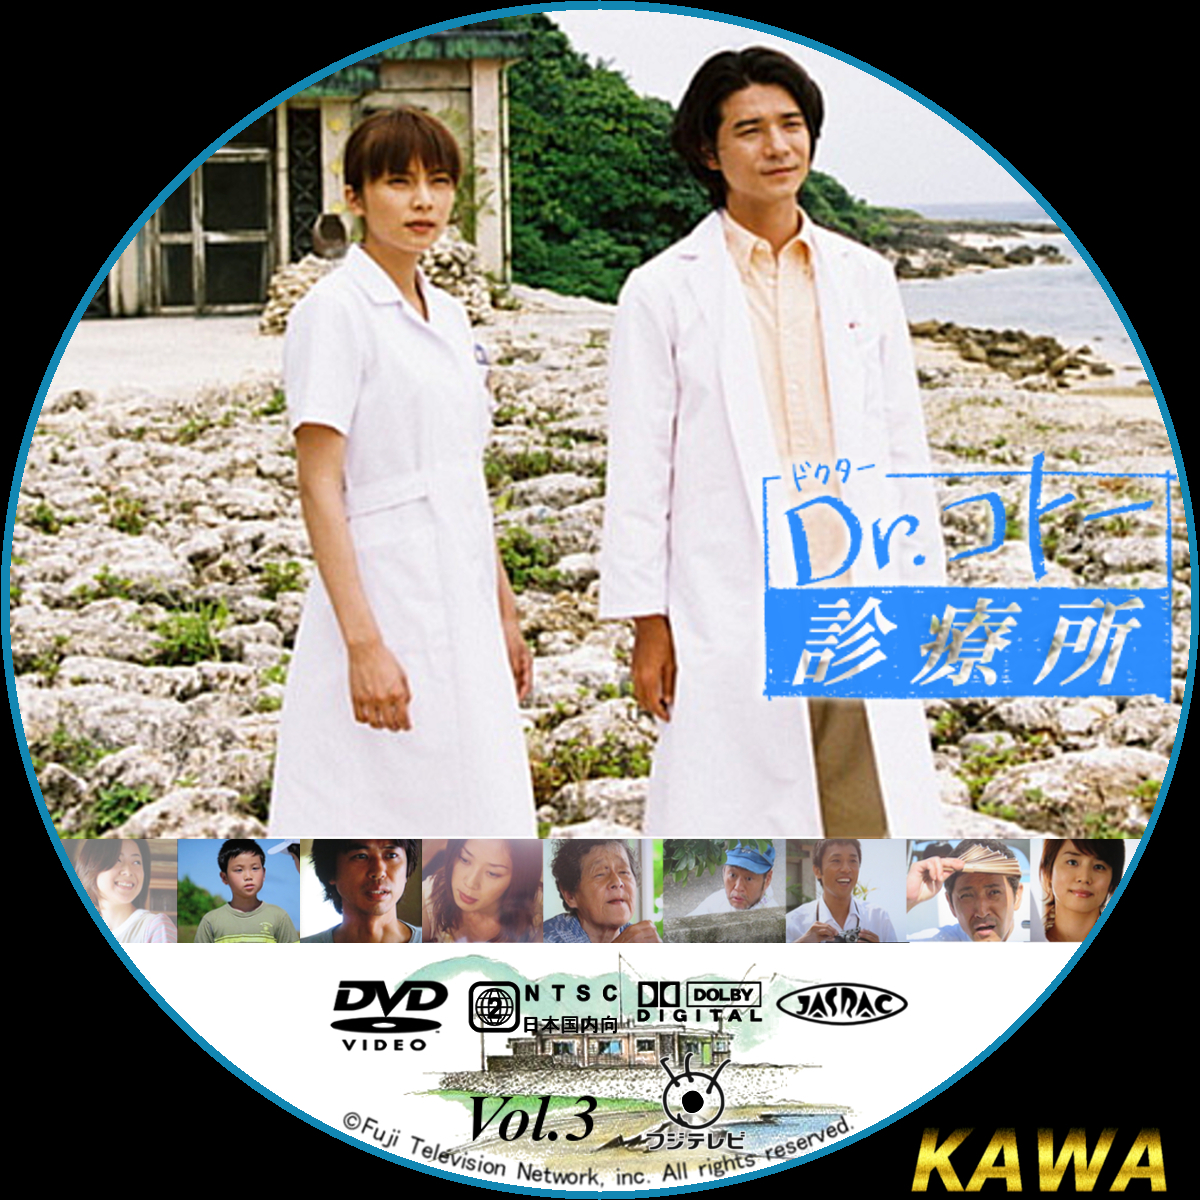 信頼 Dr.コトー診療所 2003 スペシャル エディション DVD